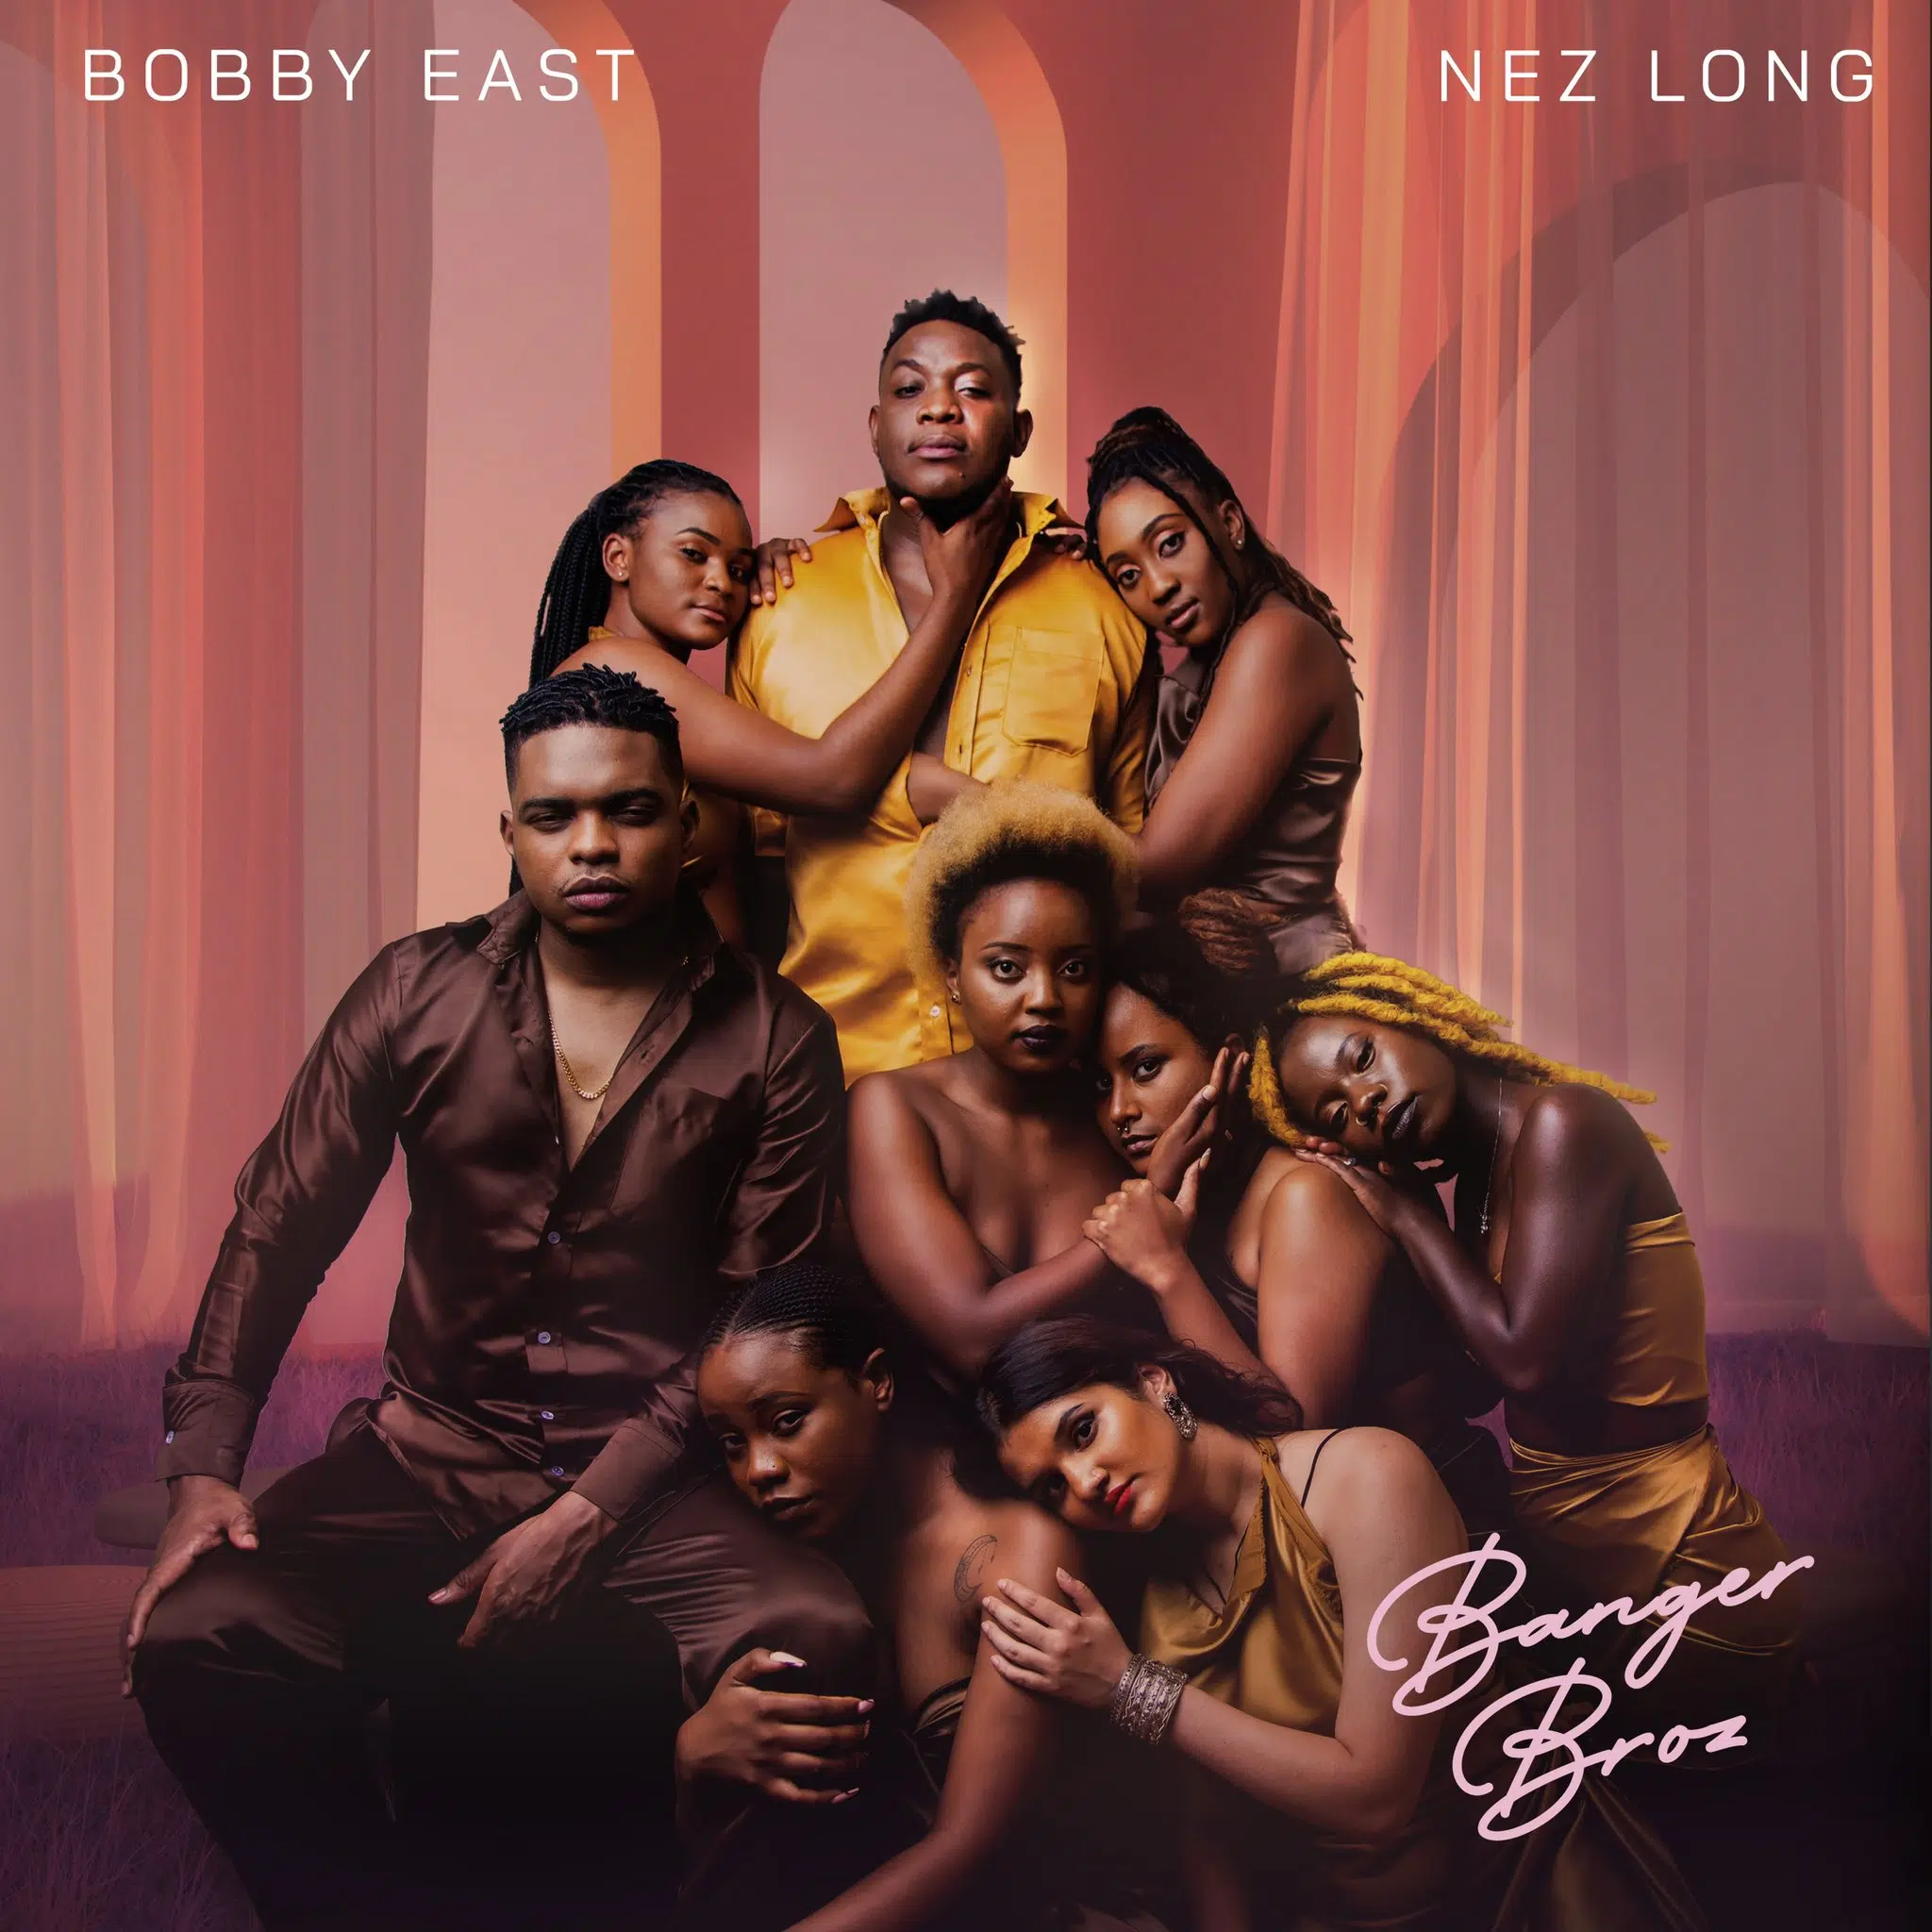 DOWNLOAD: Bobby East Ft Nez Long – “Banger Broz” Mp3